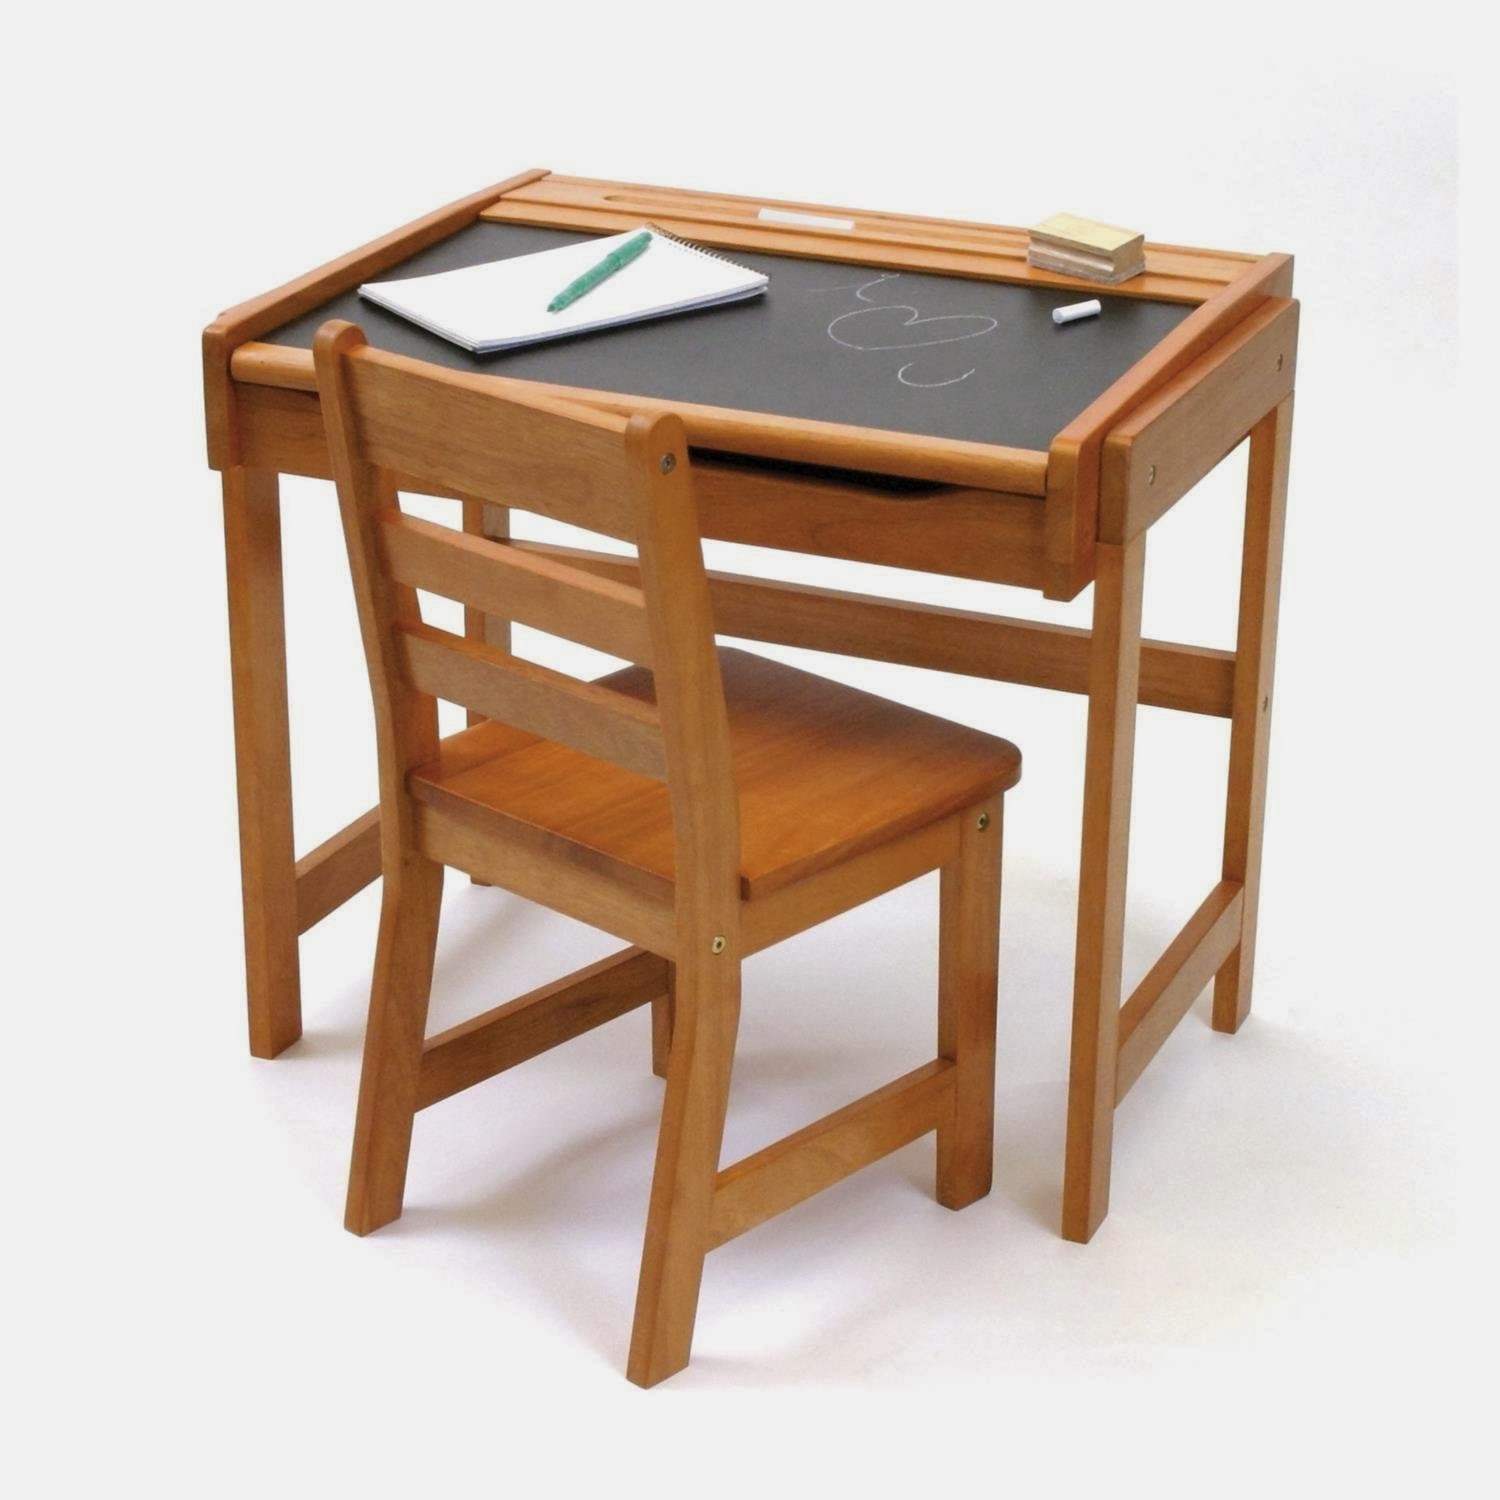 Home Office Computer Desks For Sale: School Desks For Sale